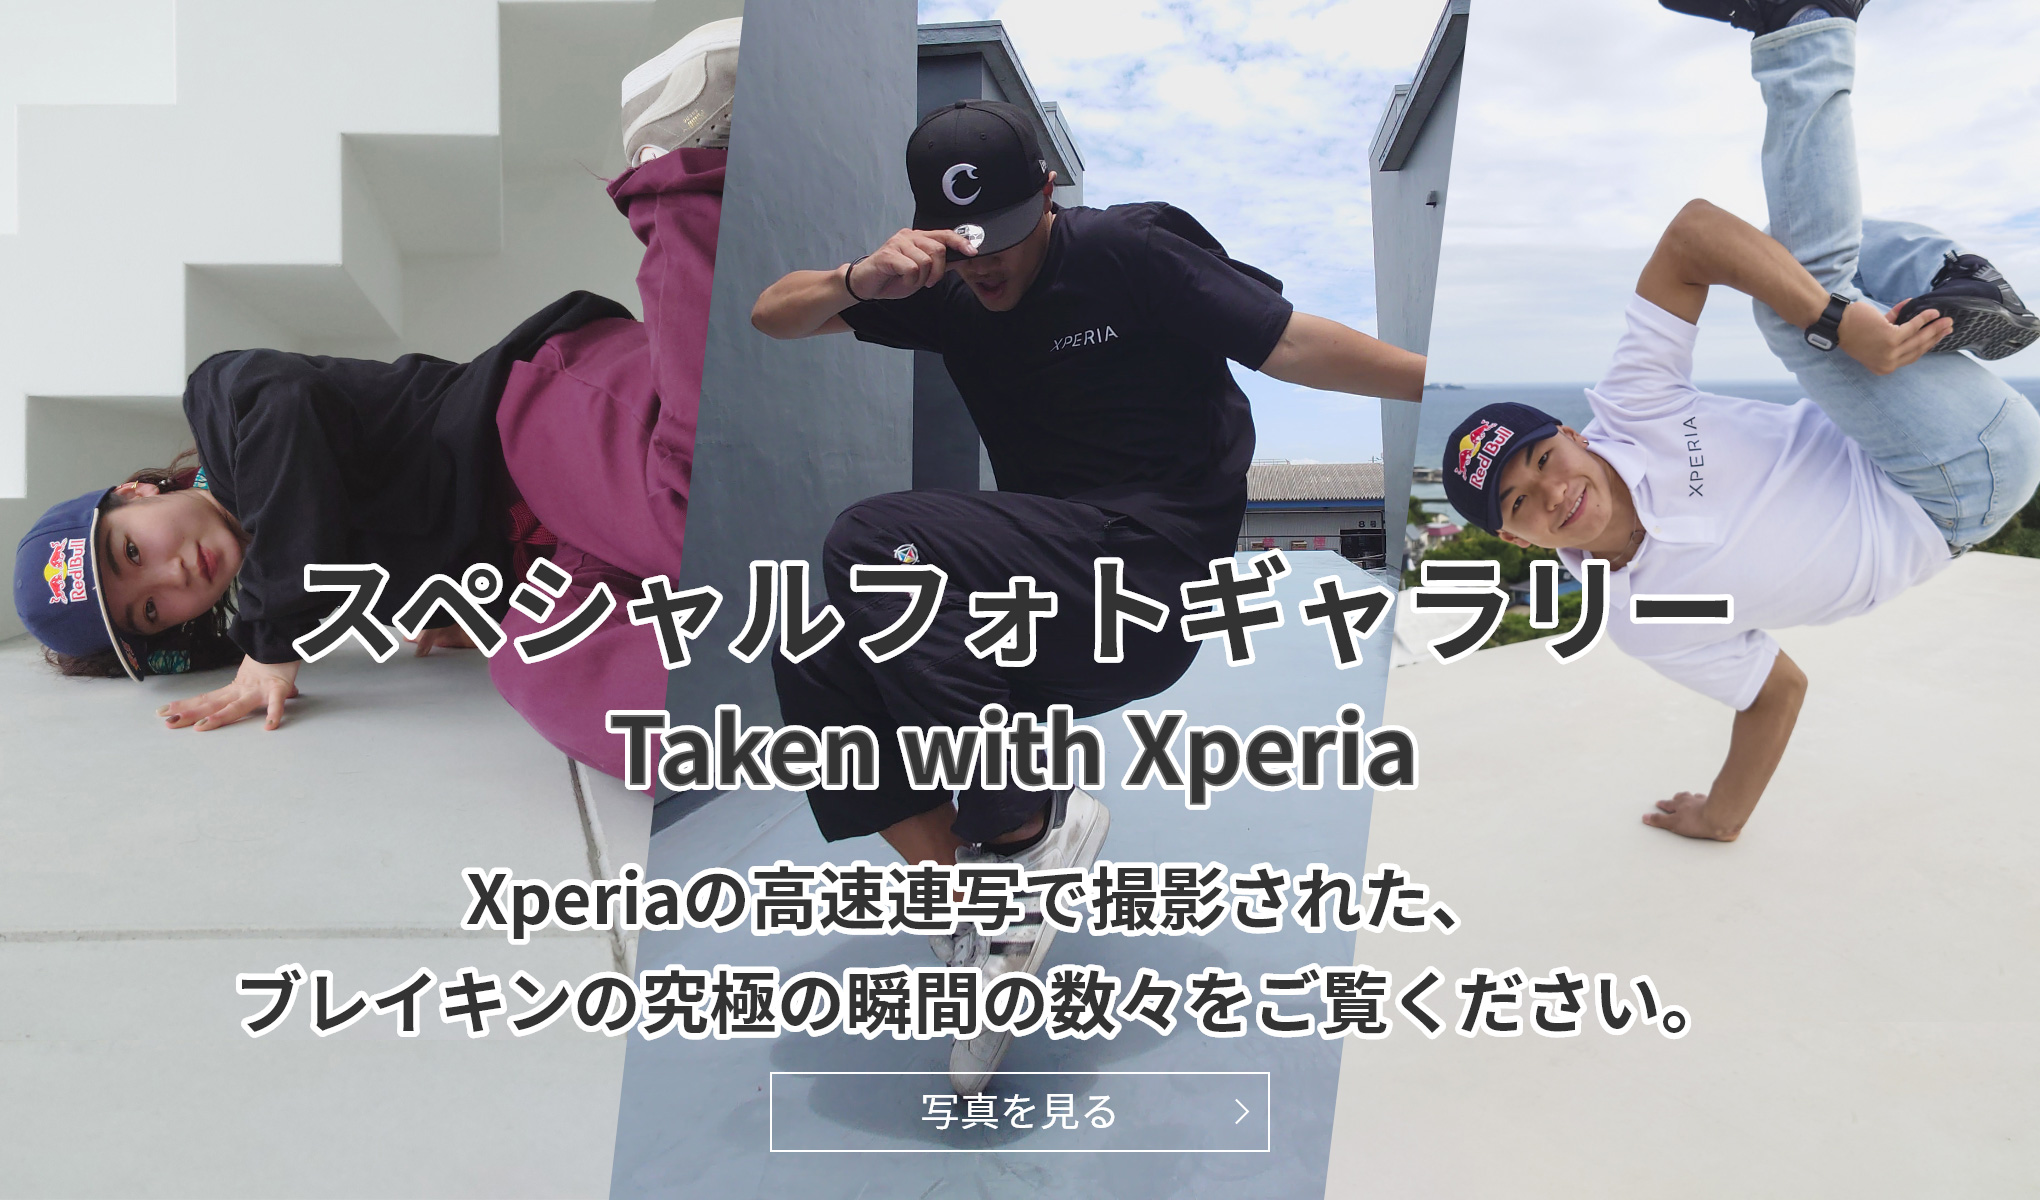 スペシャルフォトギャラリー Taken with Xperia Xperiaの高速連写で撮影された、ブレイキンの究極の瞬間の数々をご覧ください。